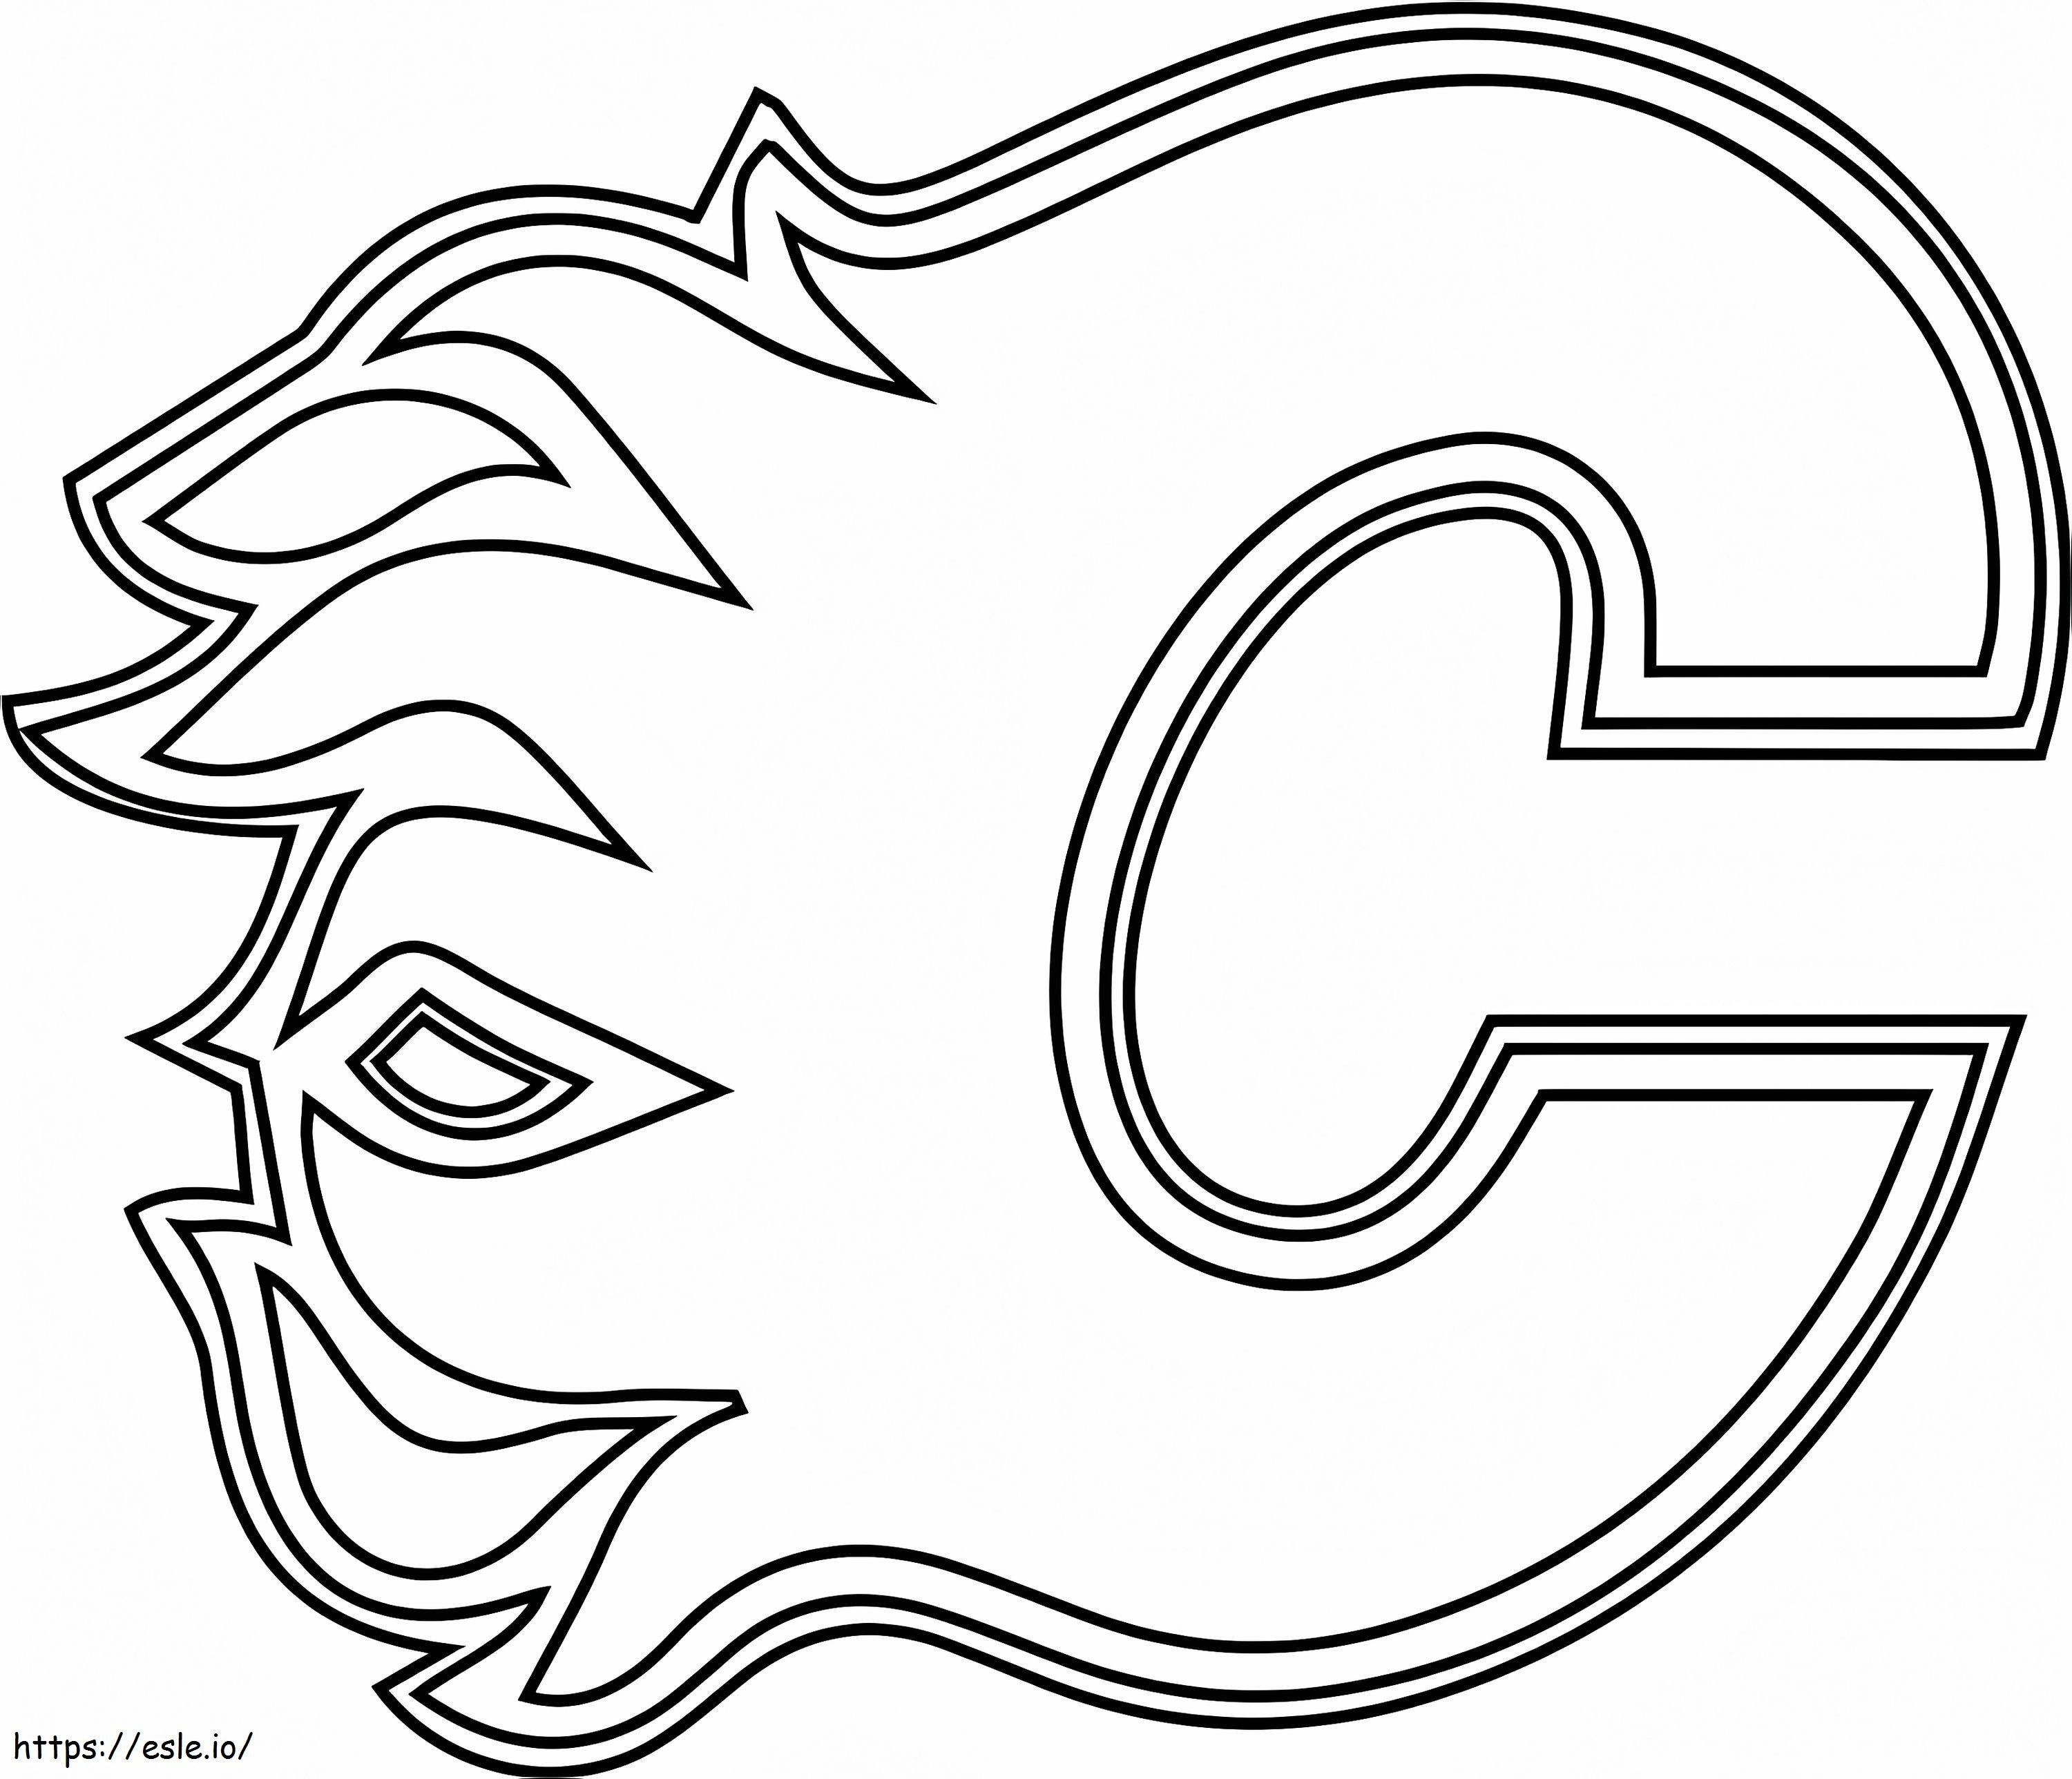 Calgary Flames-logo kleurplaat kleurplaat